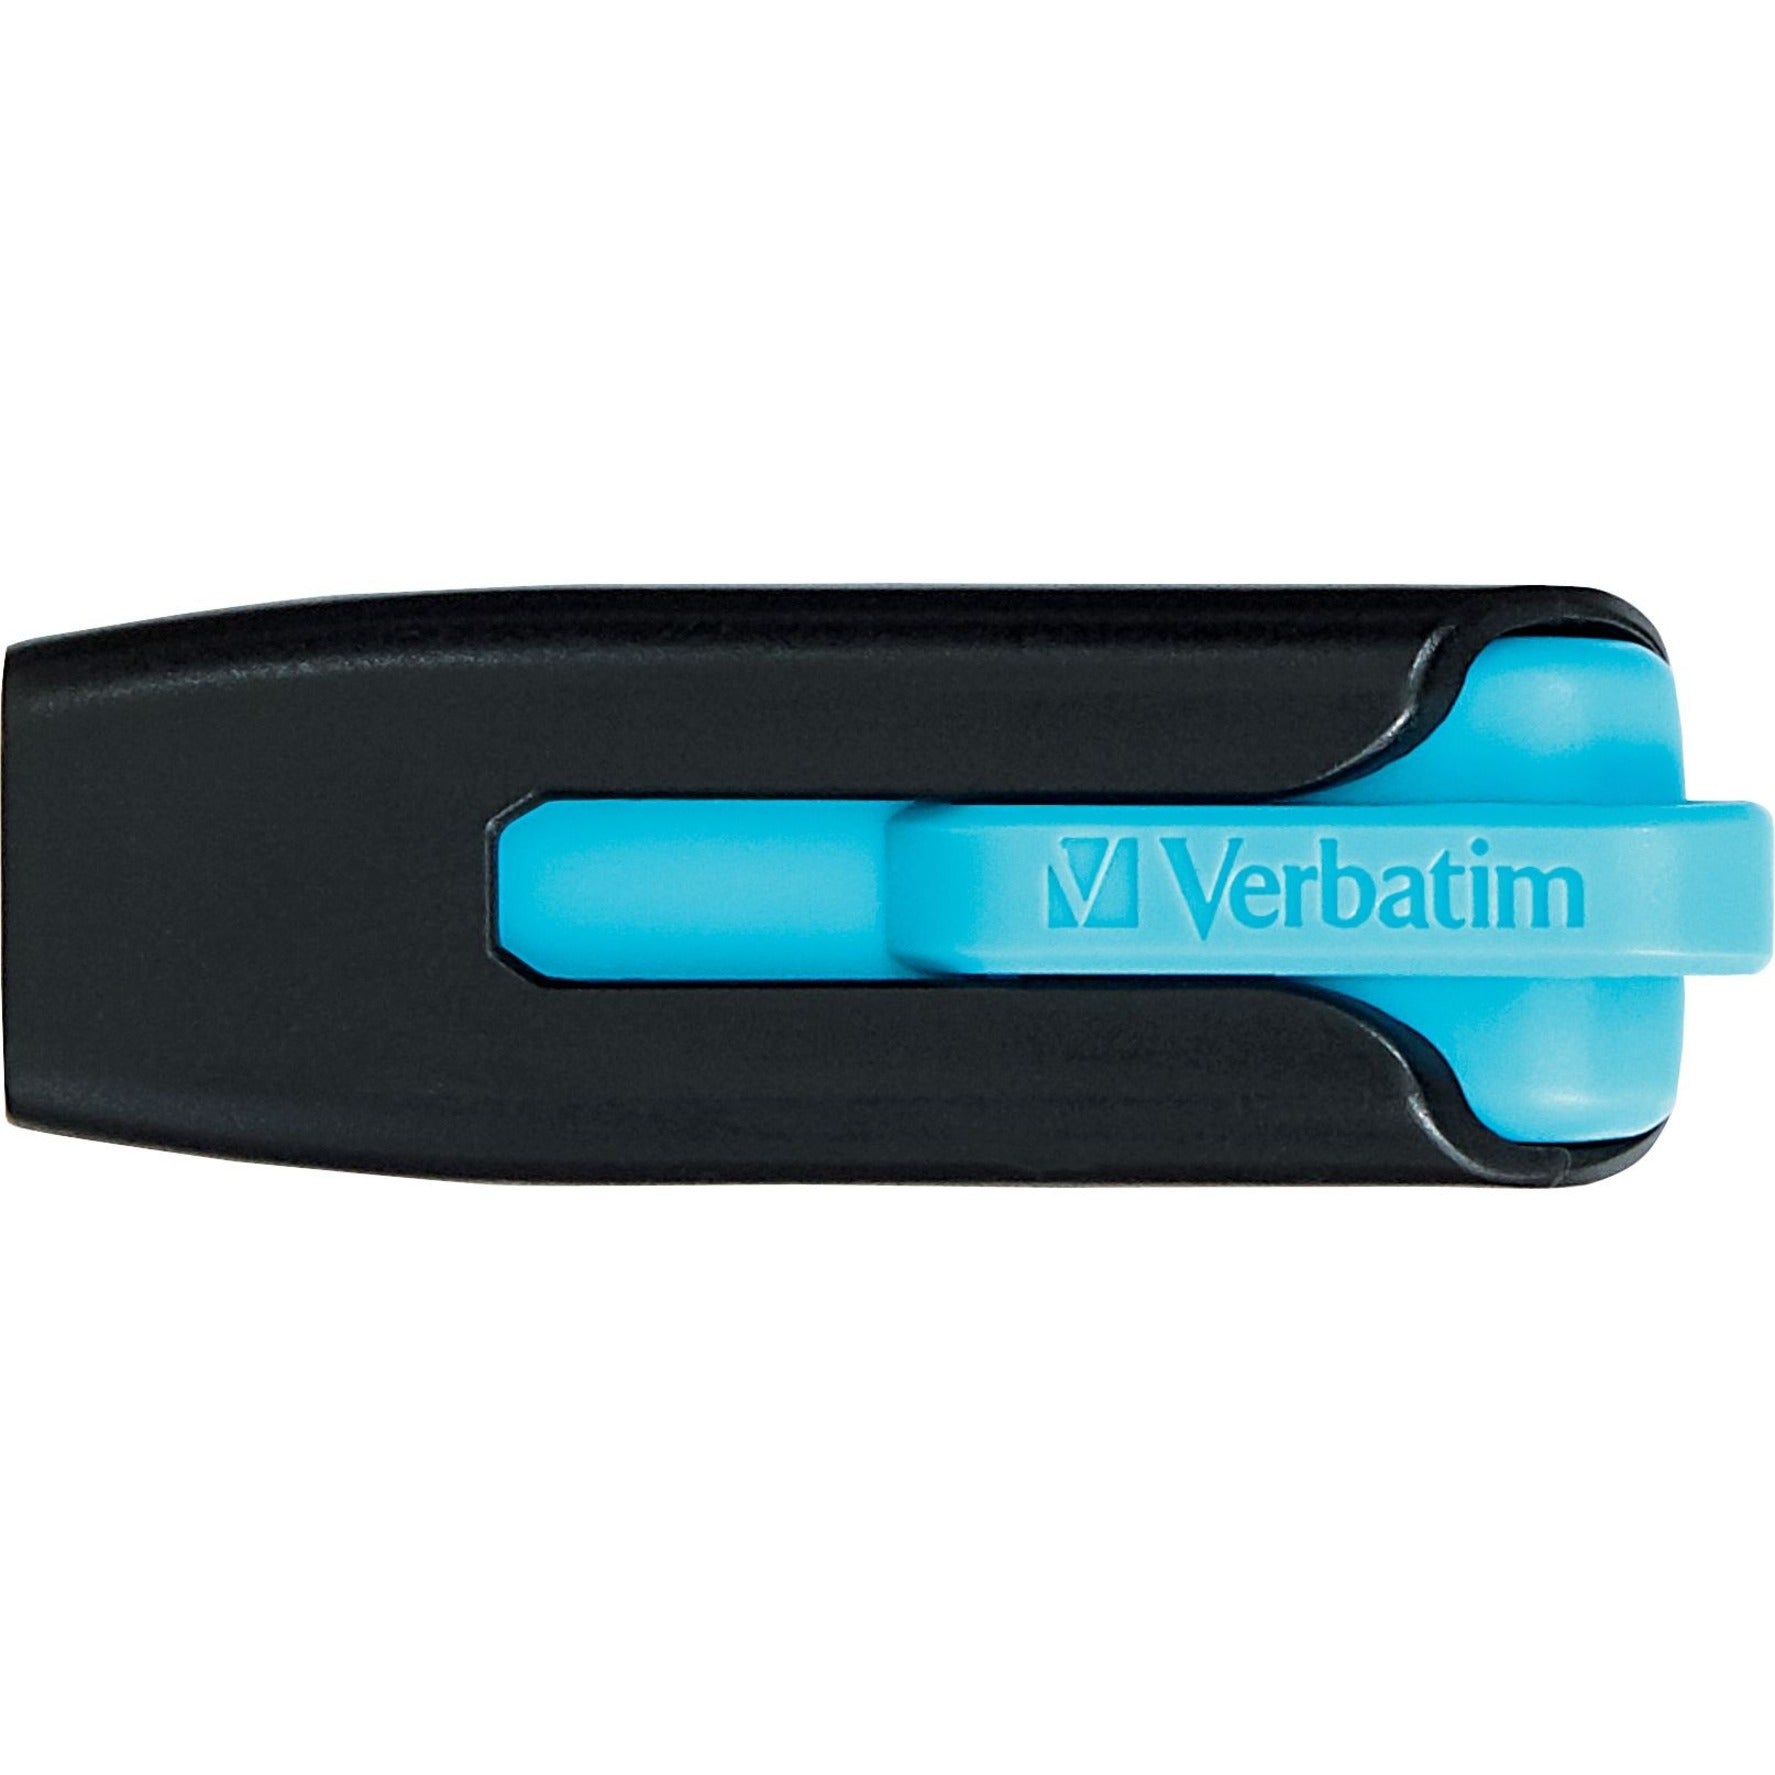 Marca: Microban  Microban 49176 Store 'n' Go V3 USB Drive 16GB Azul